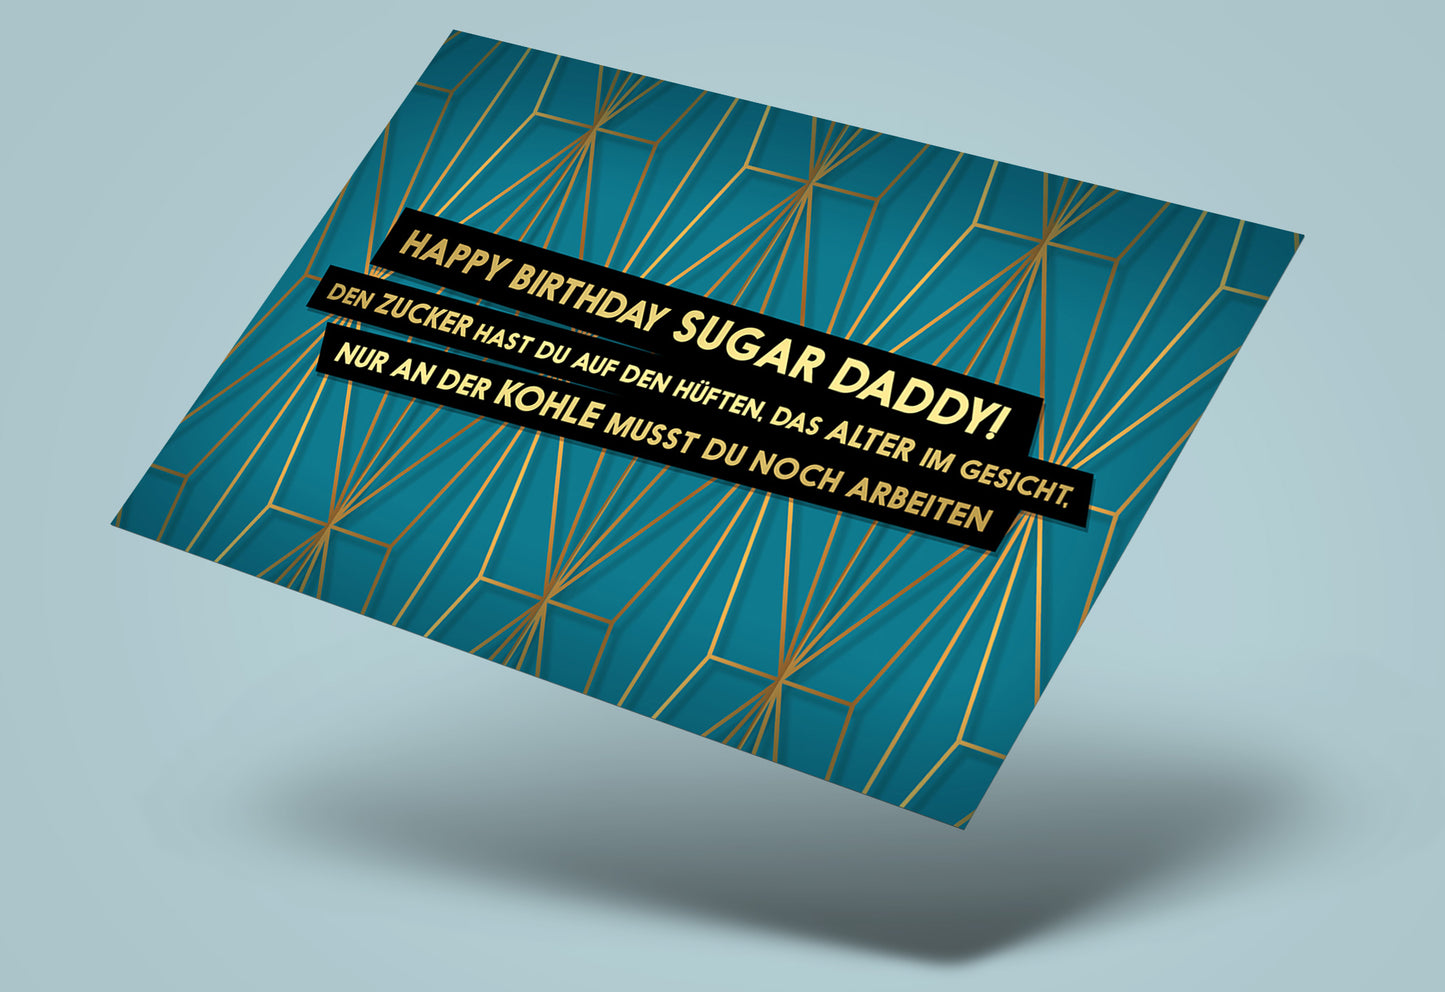 Sugar Daddy! Fck You Card